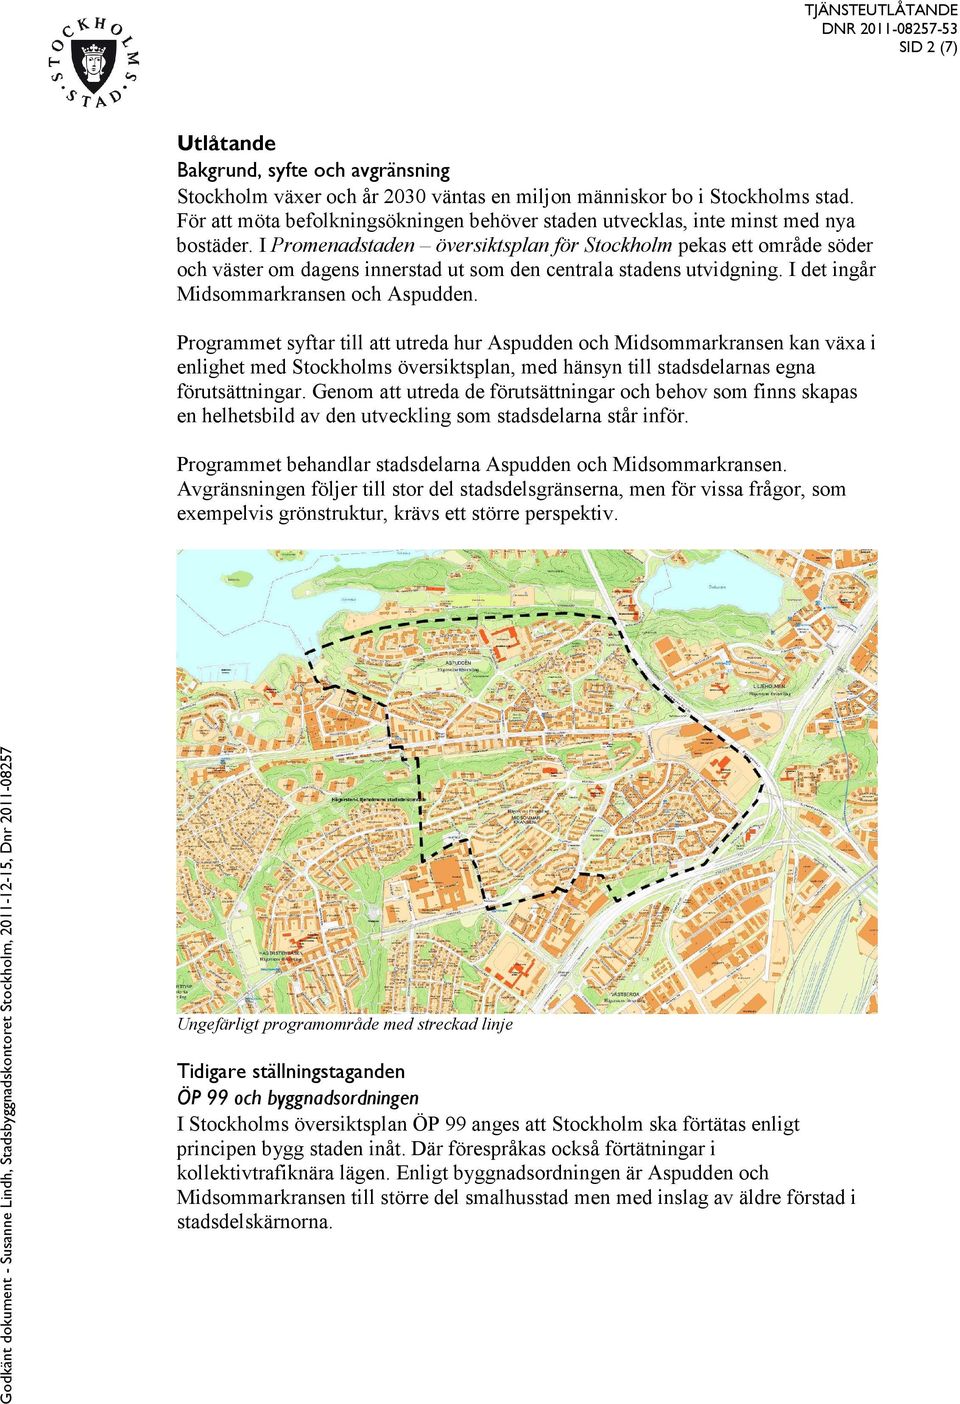 I Promenadstaden översiktsplan för Stockholm pekas ett område söder och väster om dagens innerstad ut som den centrala stadens utvidgning. I det ingår Midsommarkransen och Aspudden.